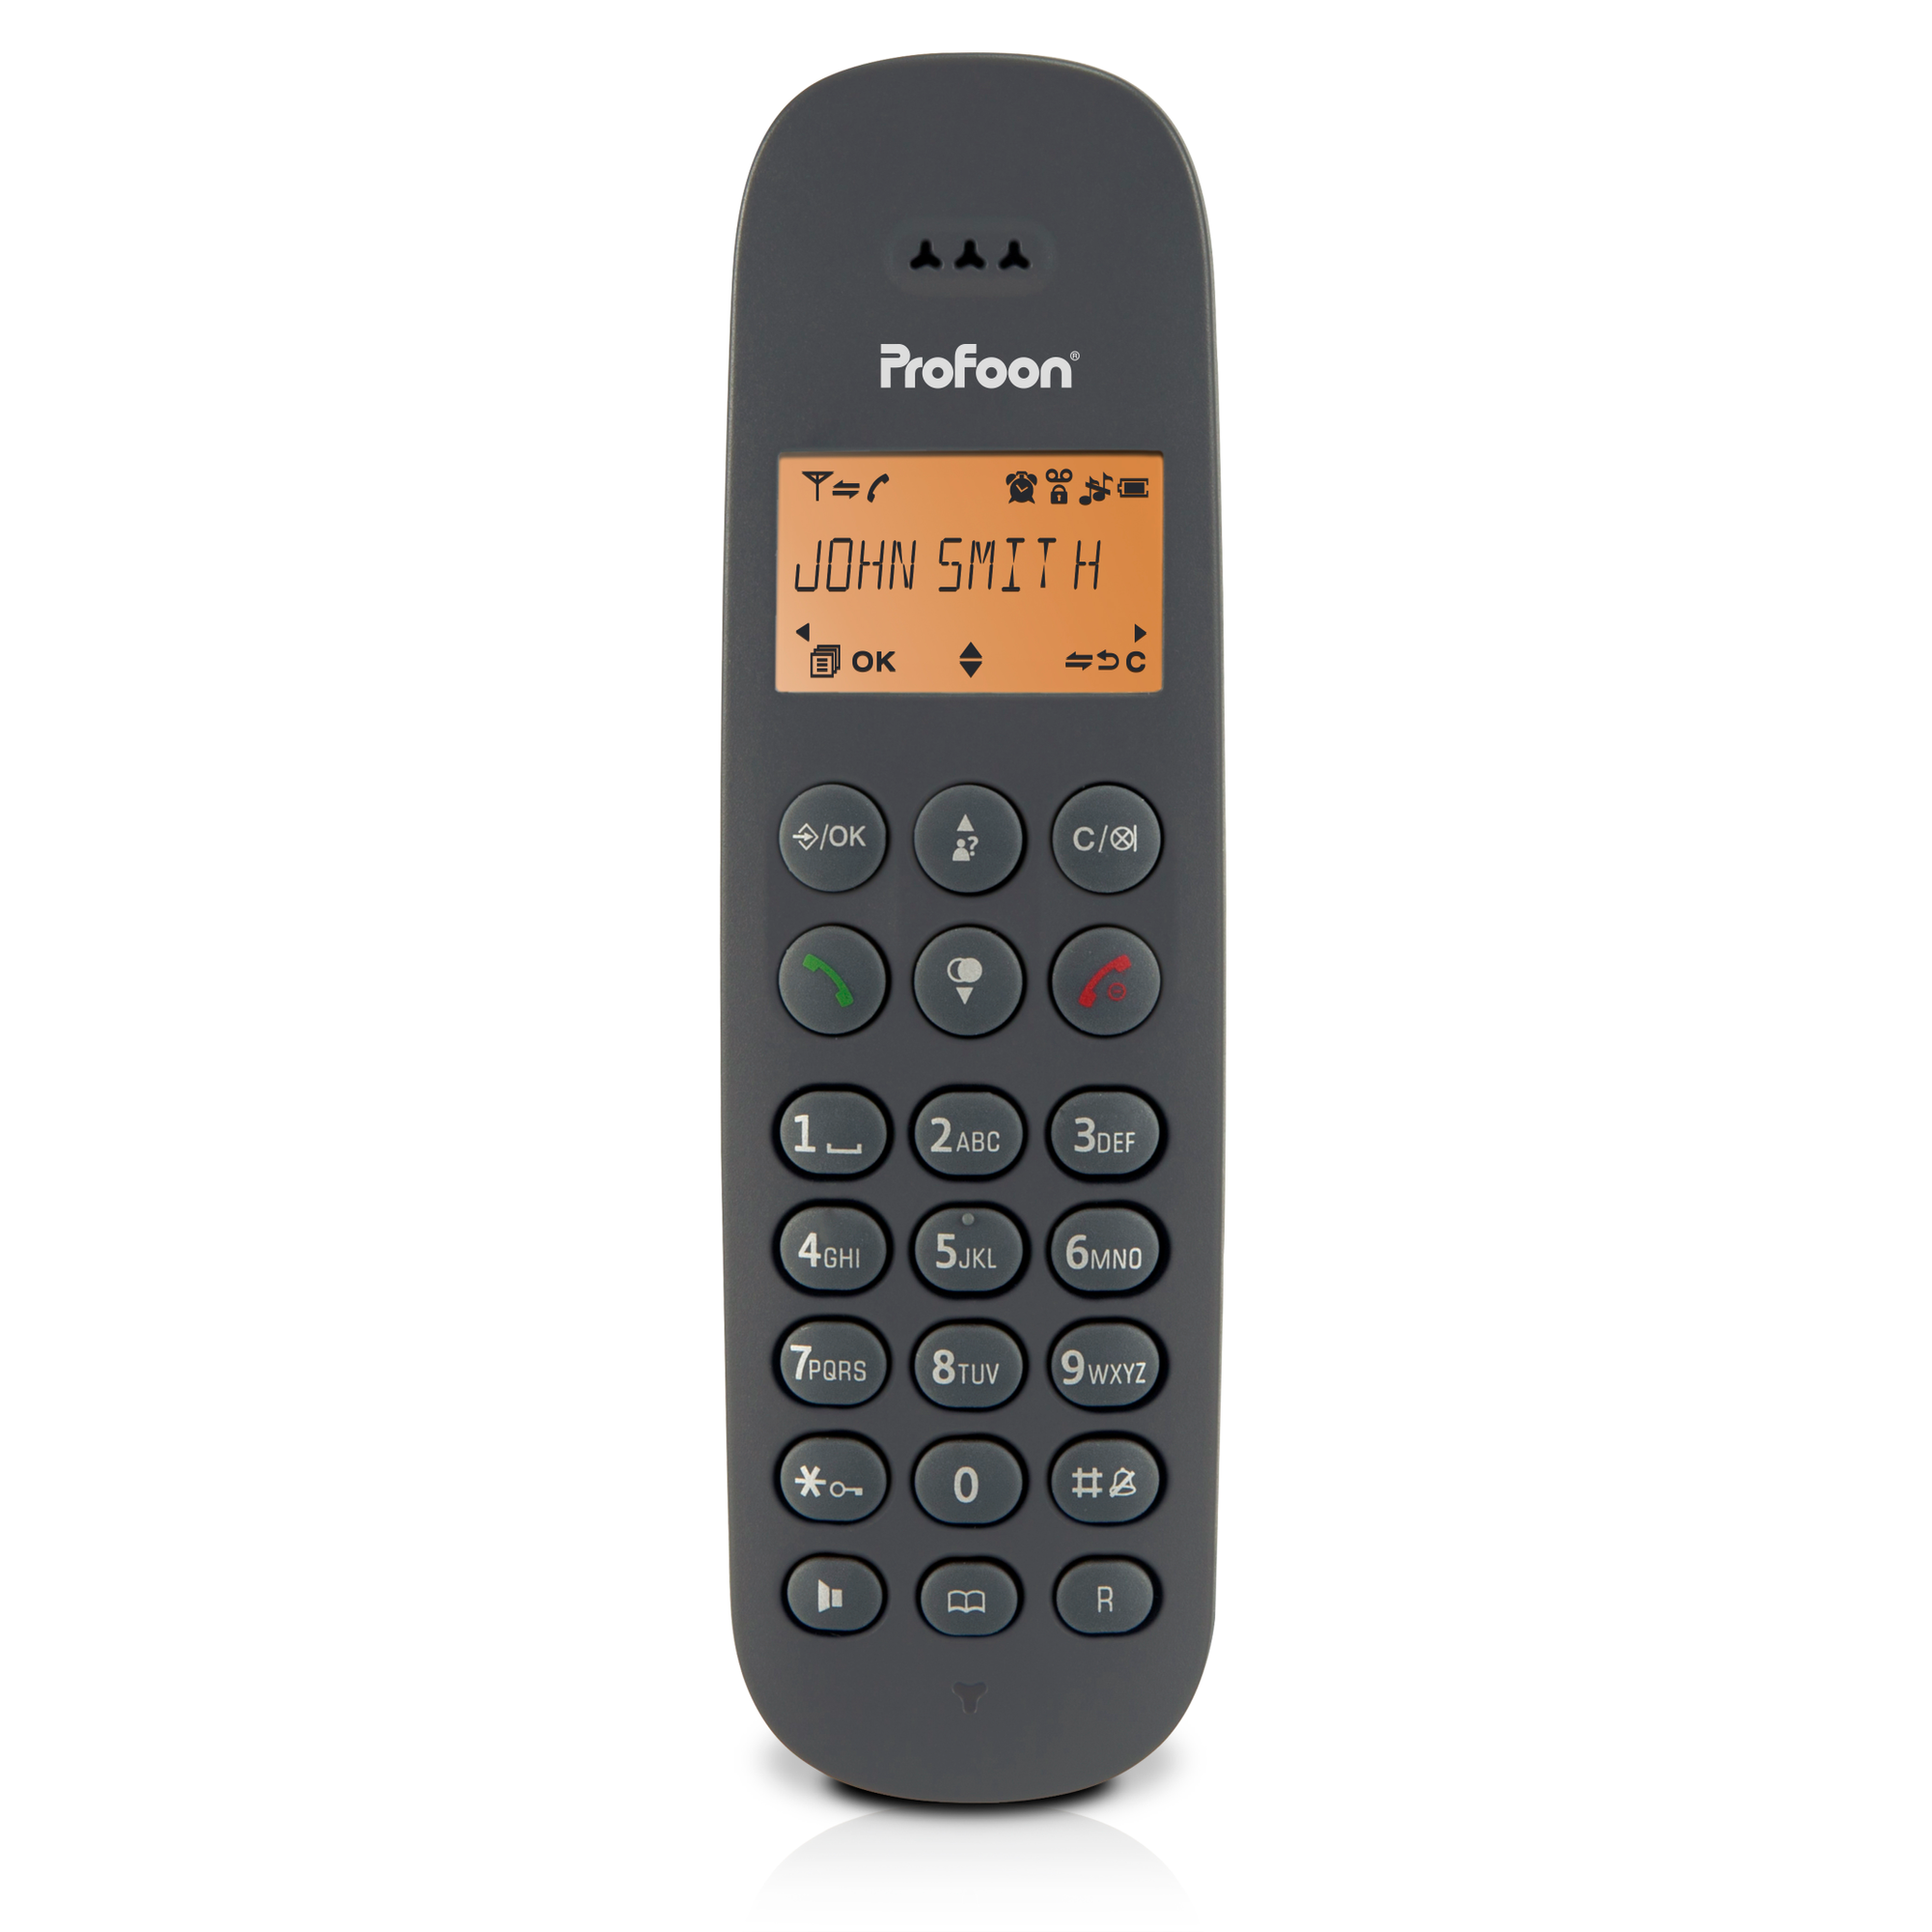 schnurloses Telefon PDX600 - DECT PROFOON 1 Mobilteil mit